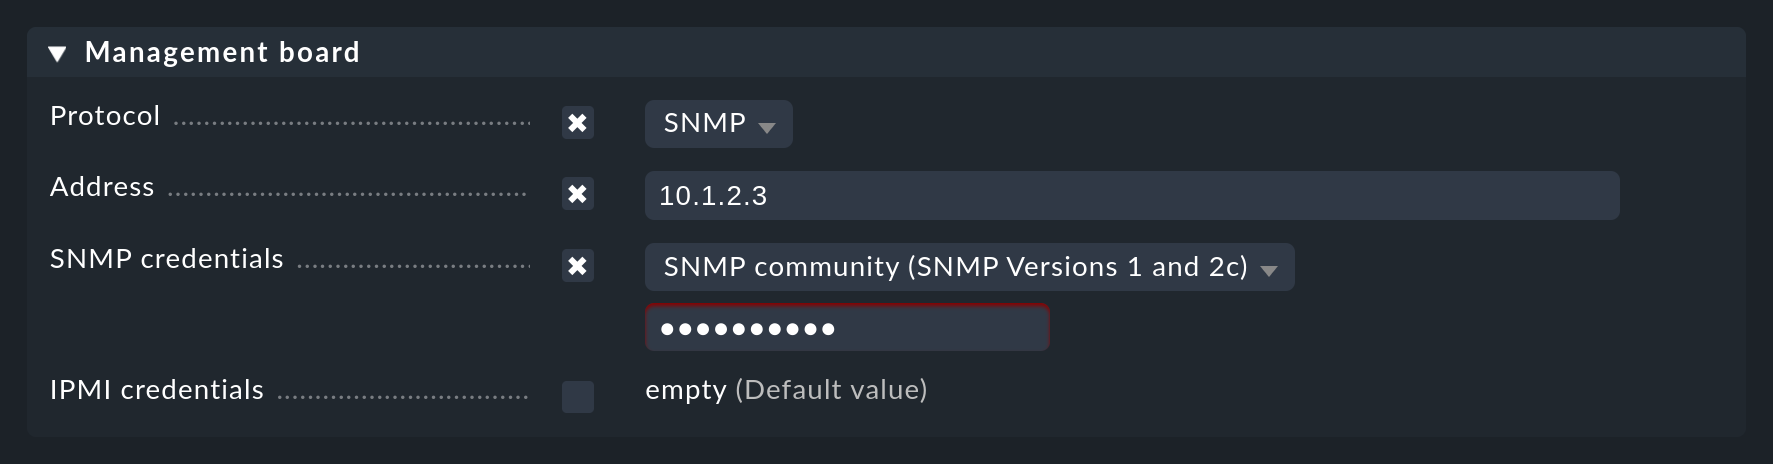 Die Konfiguration des Managementboards für SNMP in den Eigenschaften des Hosts.